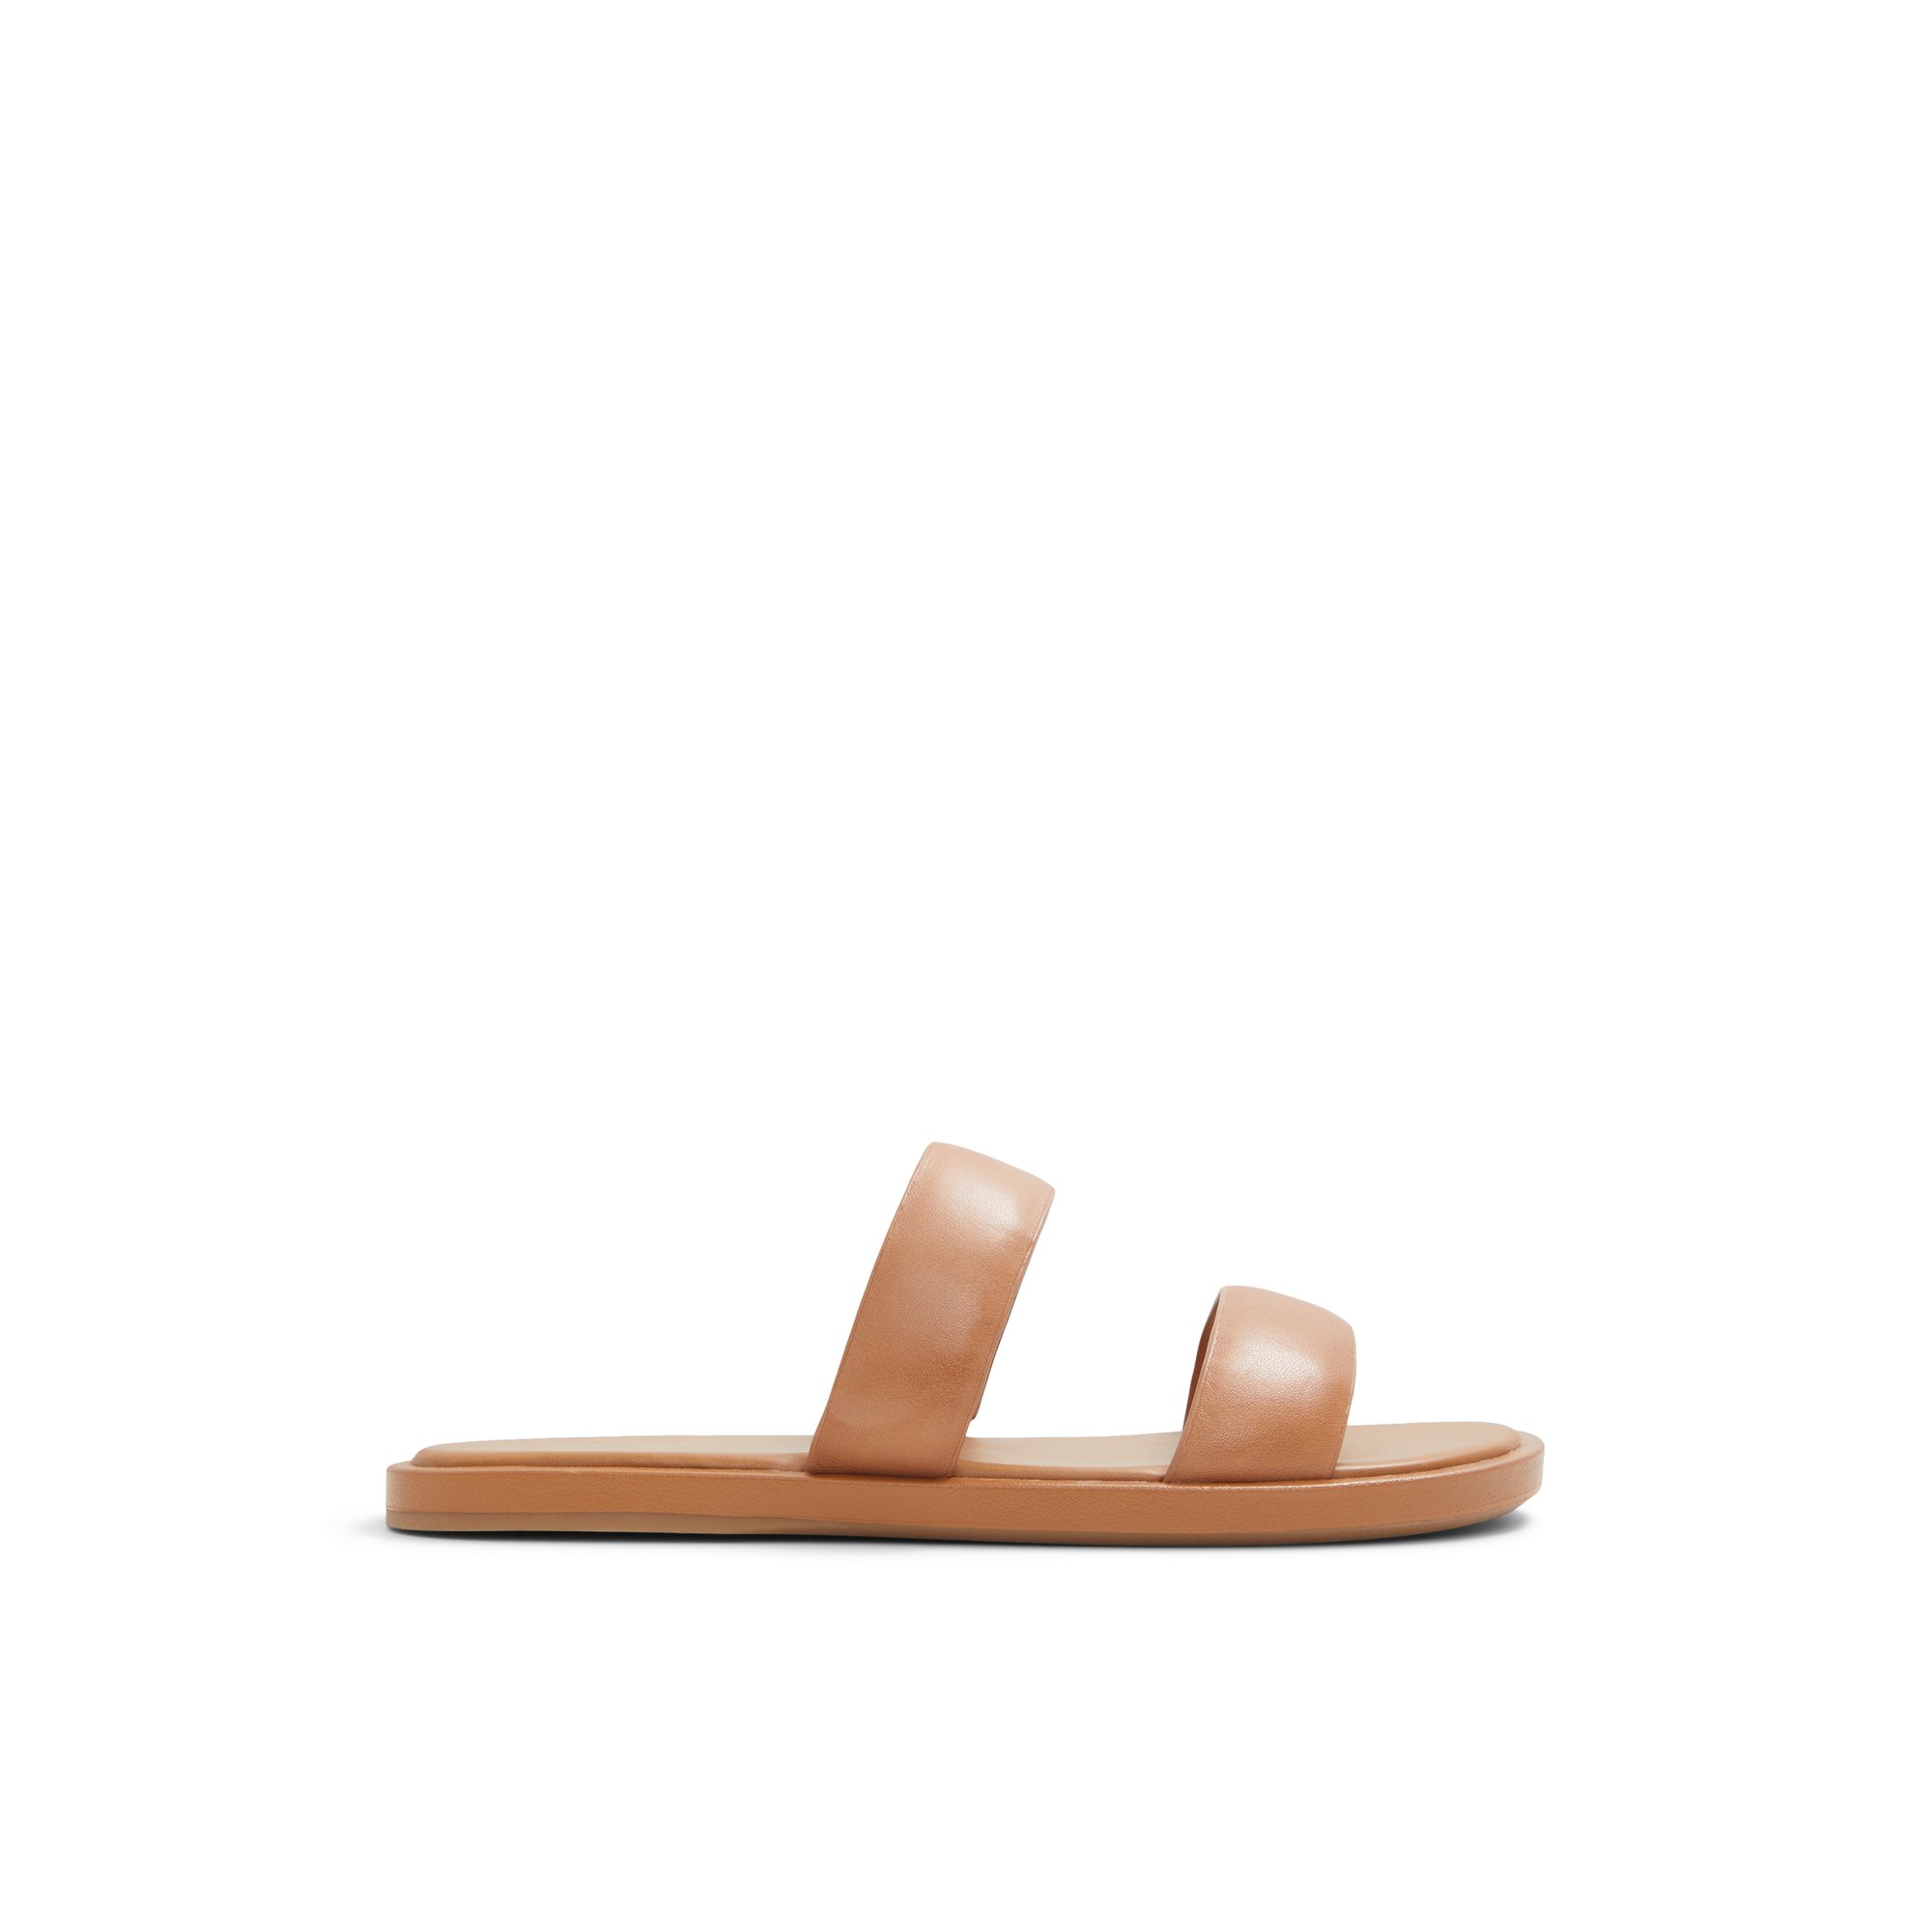 ALDO Krios - Women's Sandals Flats - Beige